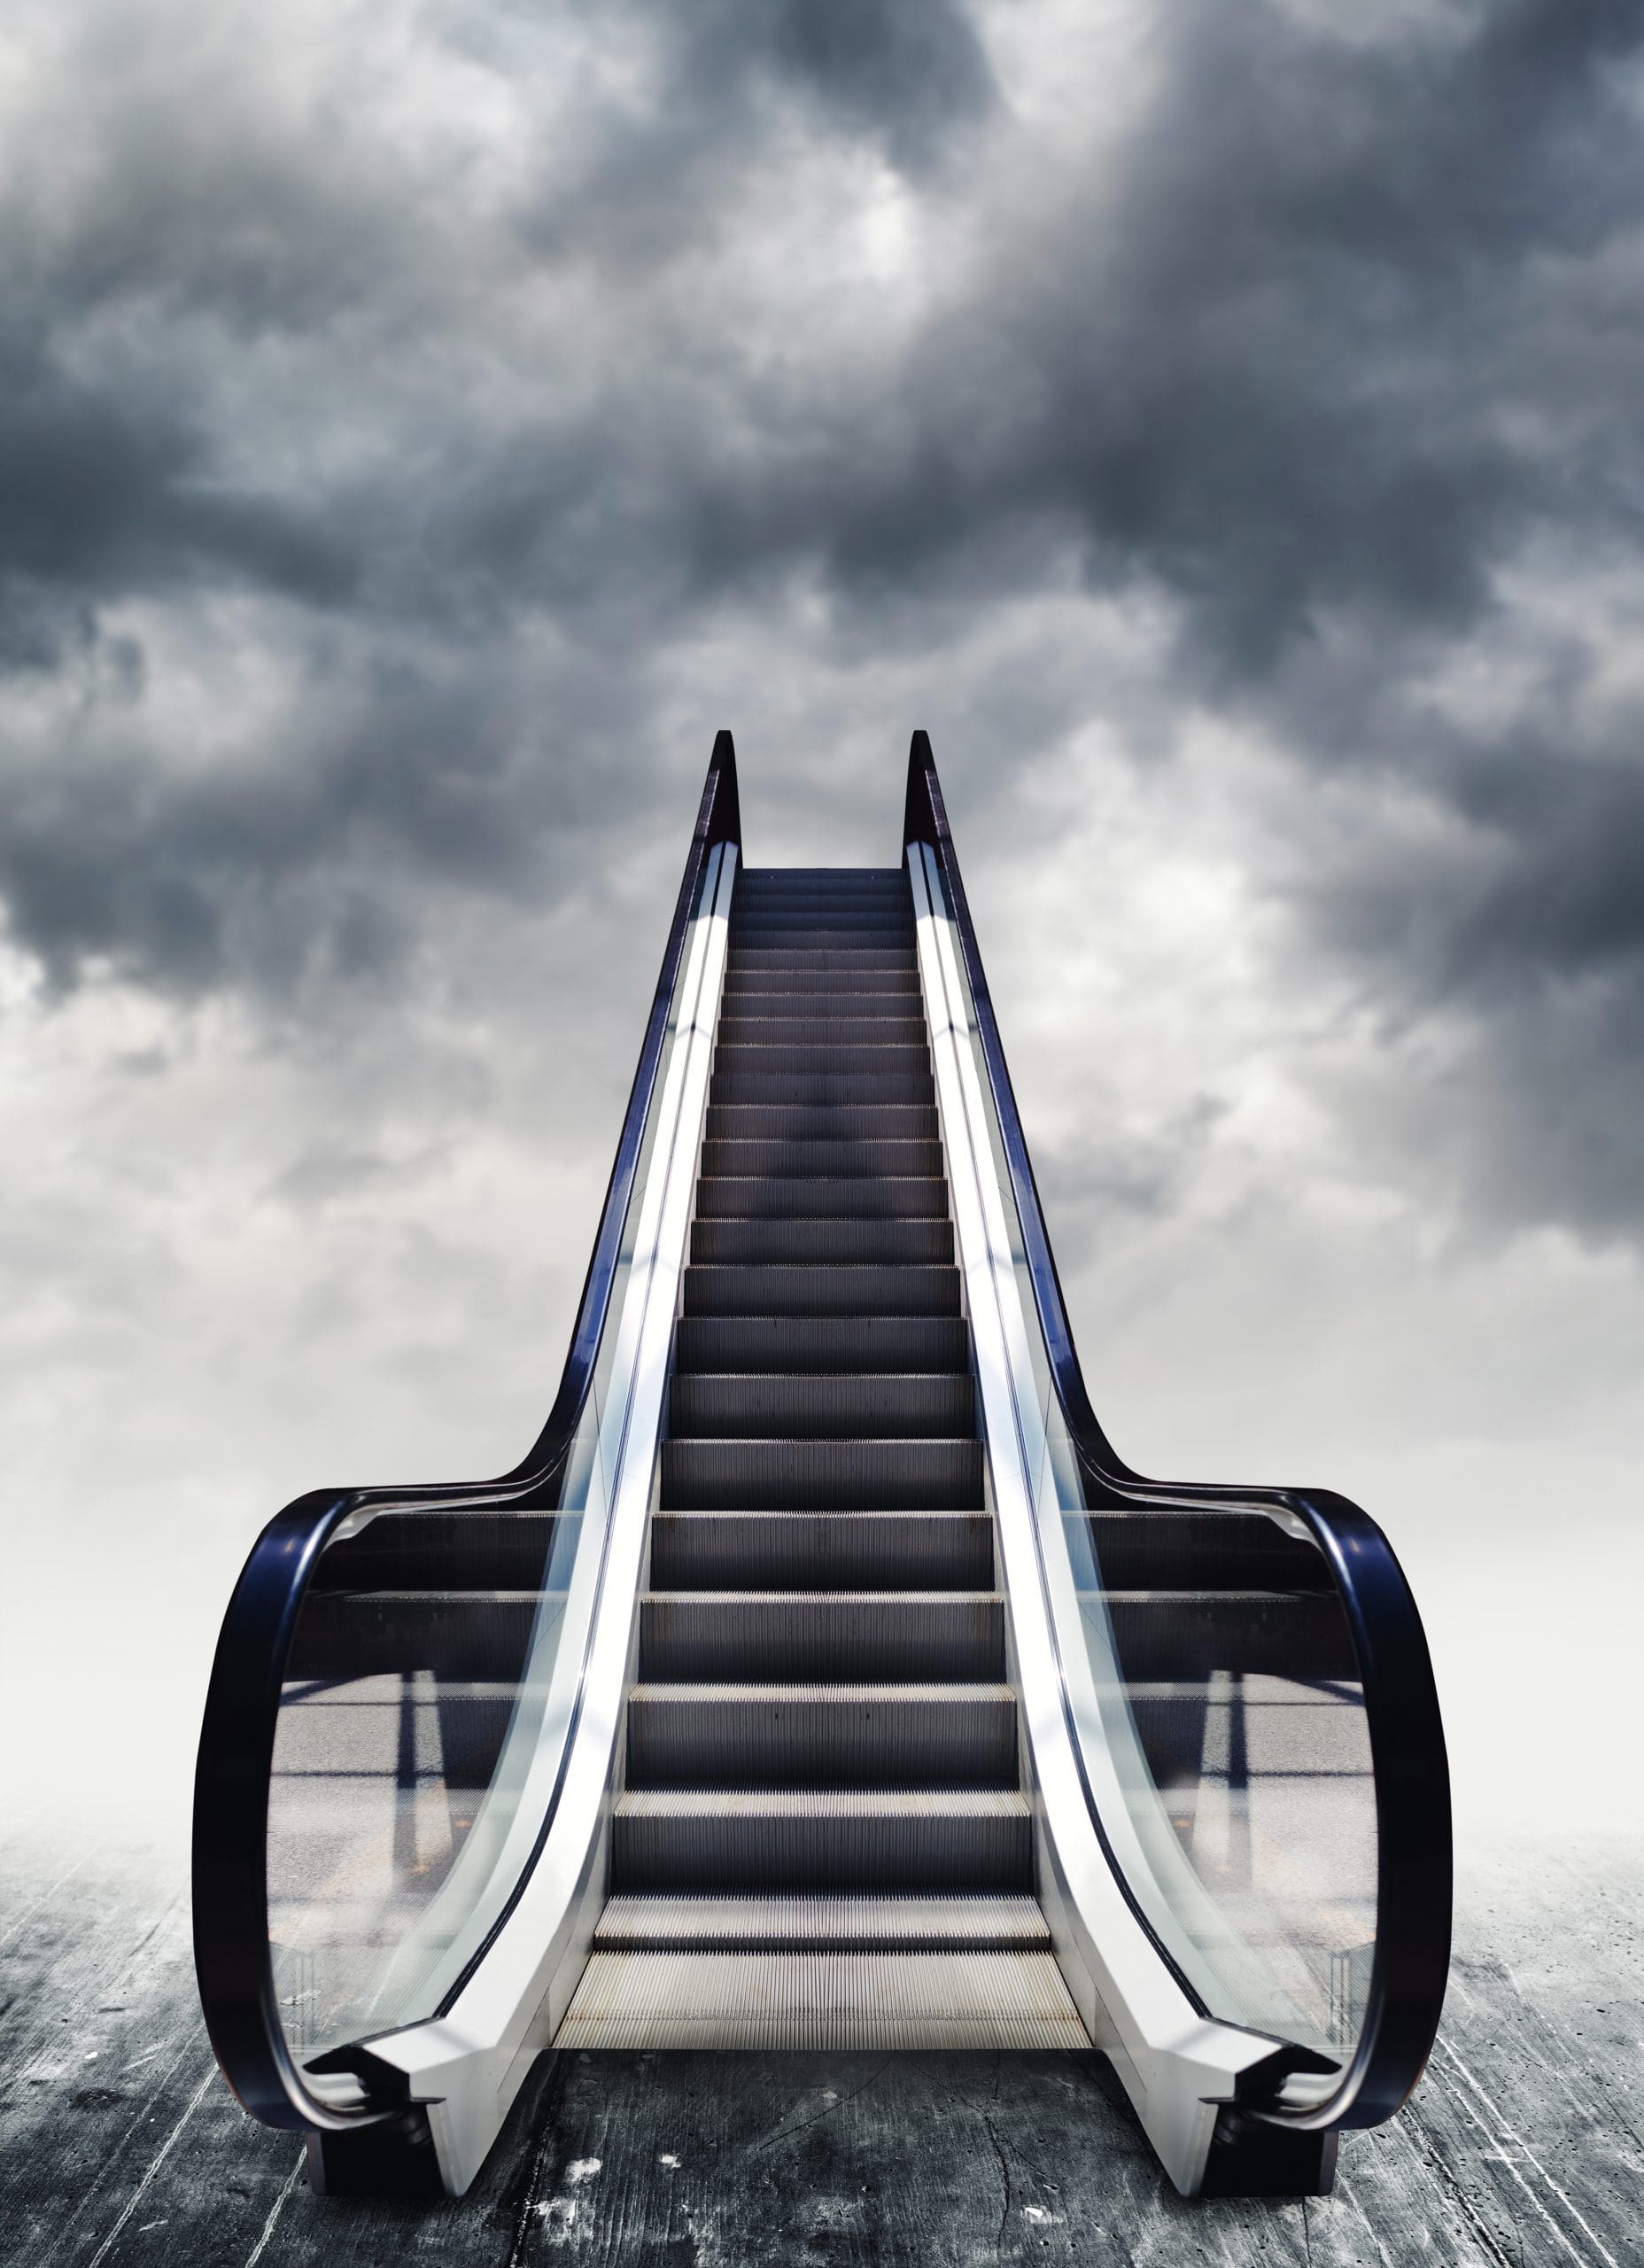 Conceptual image of escalators